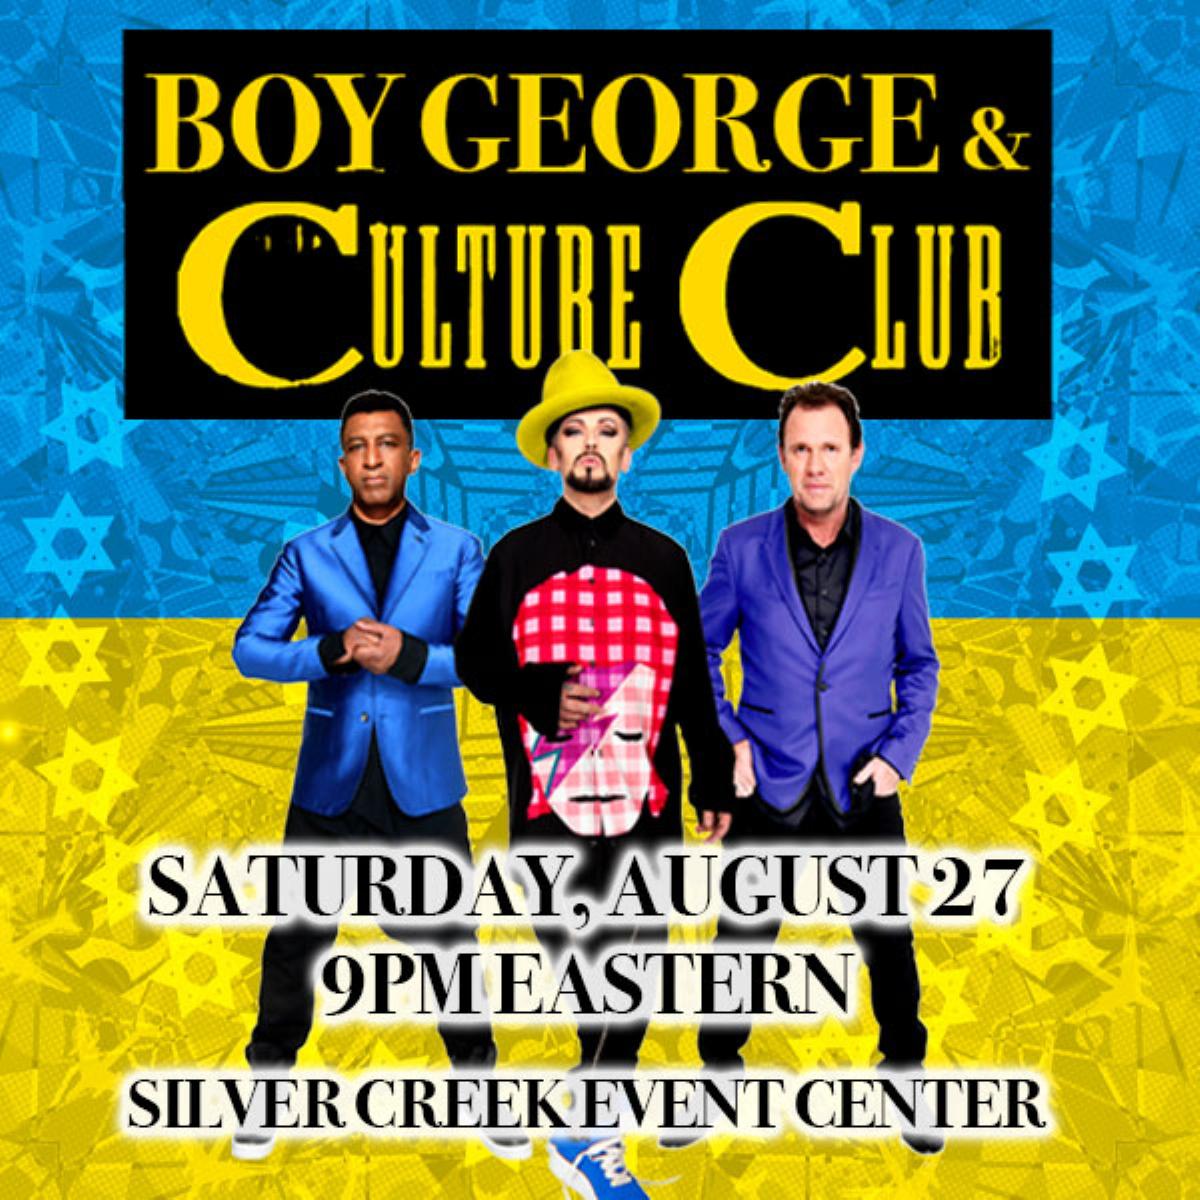 Boy George & Culture Club